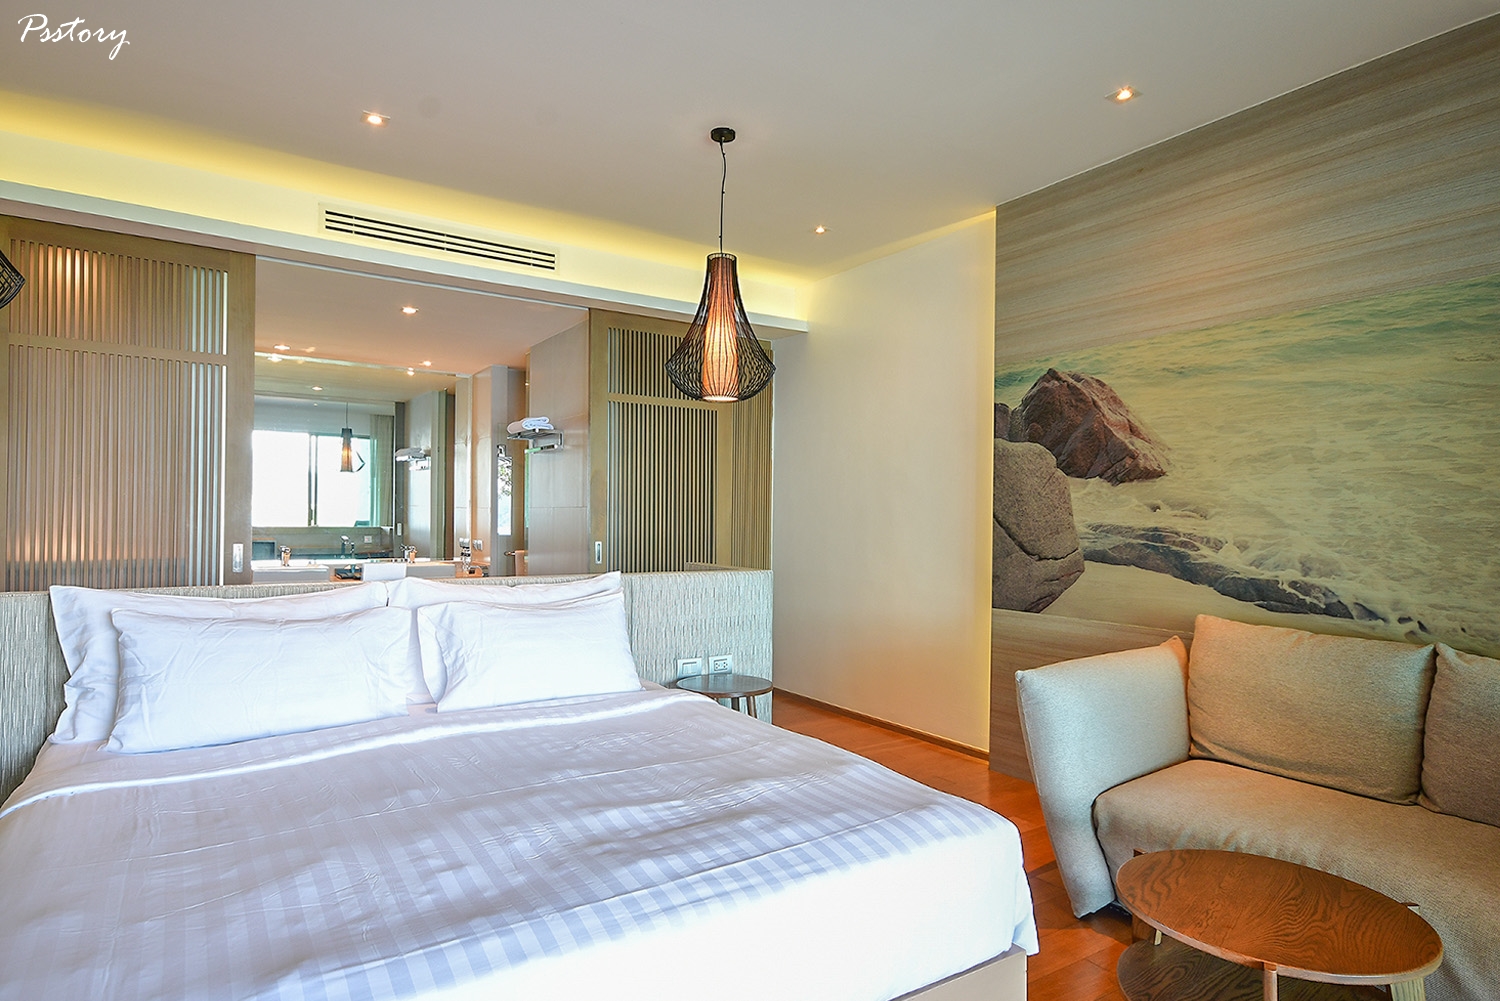 โรงแรม wyndham grand phuket kalim bay review